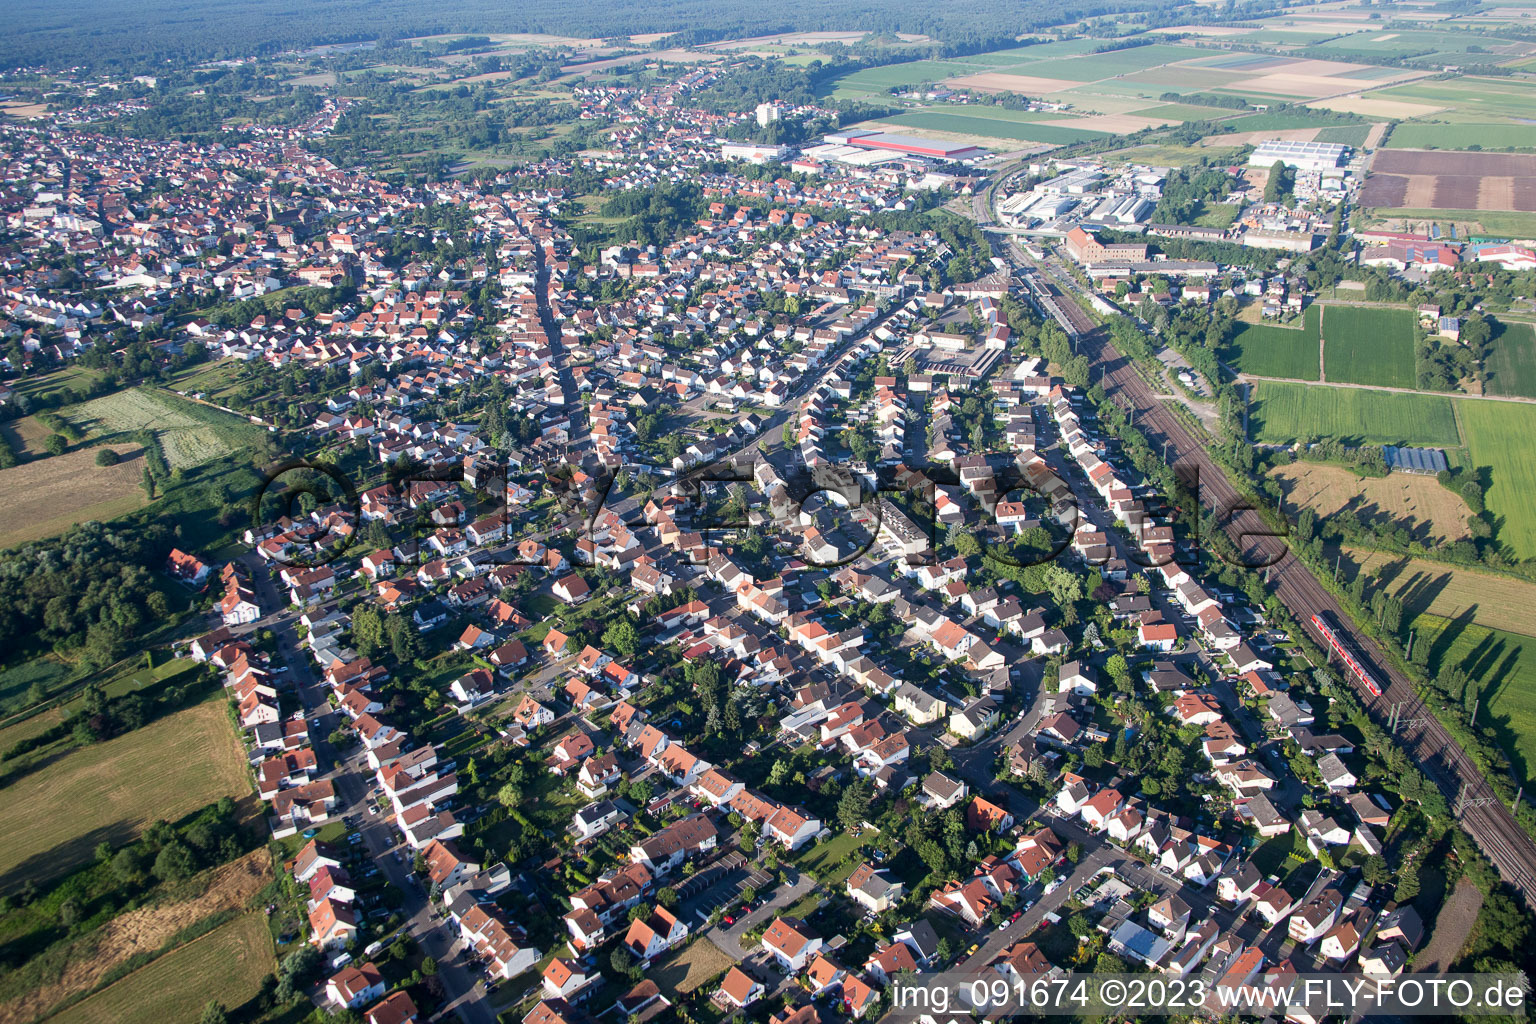 Schifferstadt im Bundesland Rheinland-Pfalz, Deutschland von oben gesehen